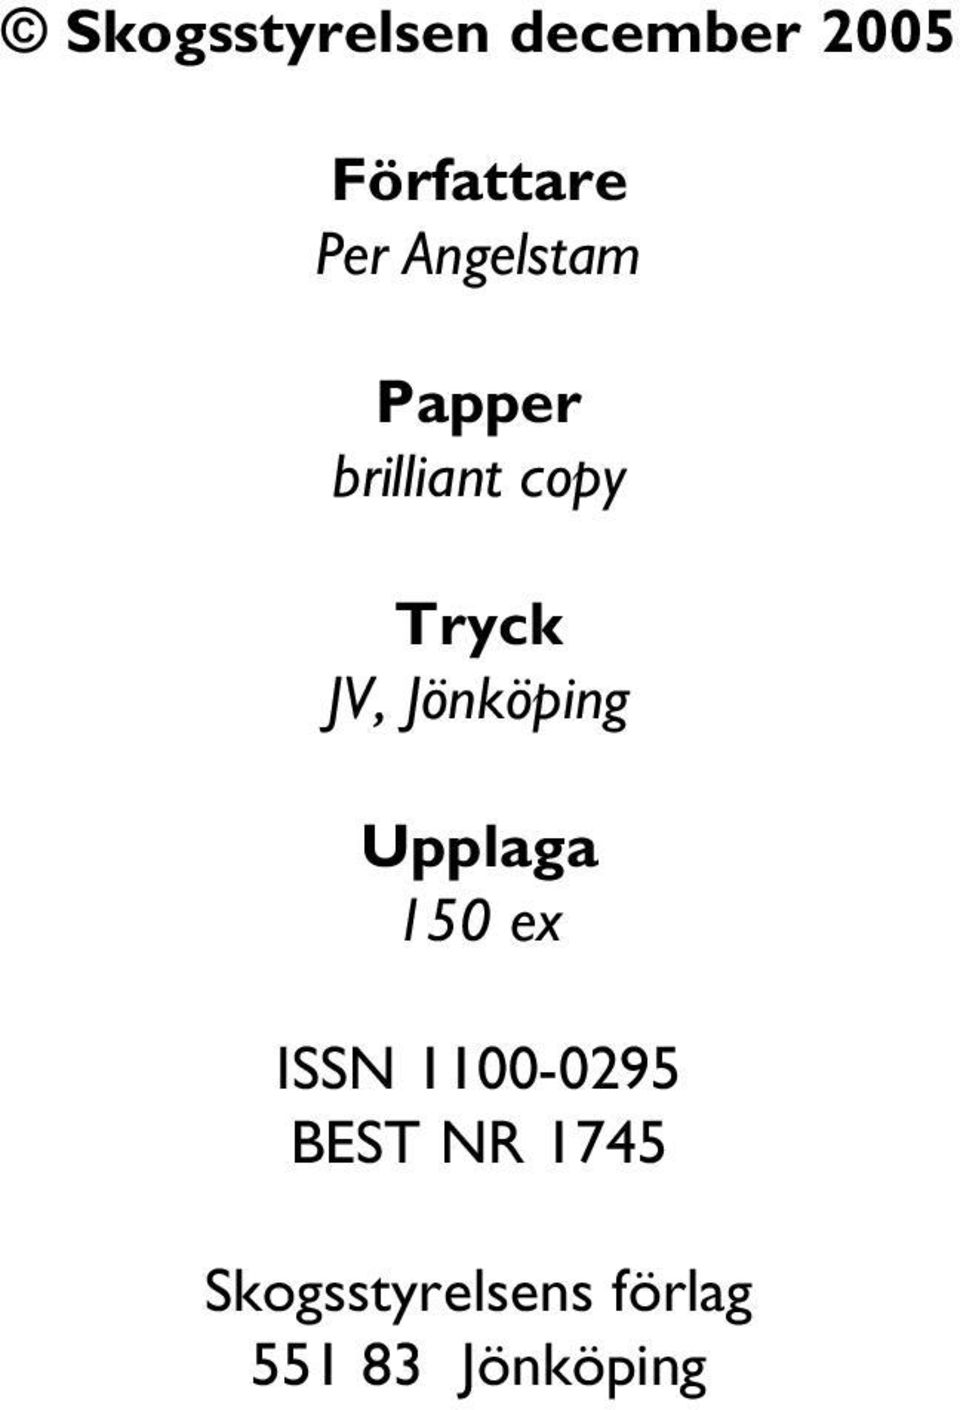 Jönköping Upplaga 150 ex ISSN 1100-0295 BEST